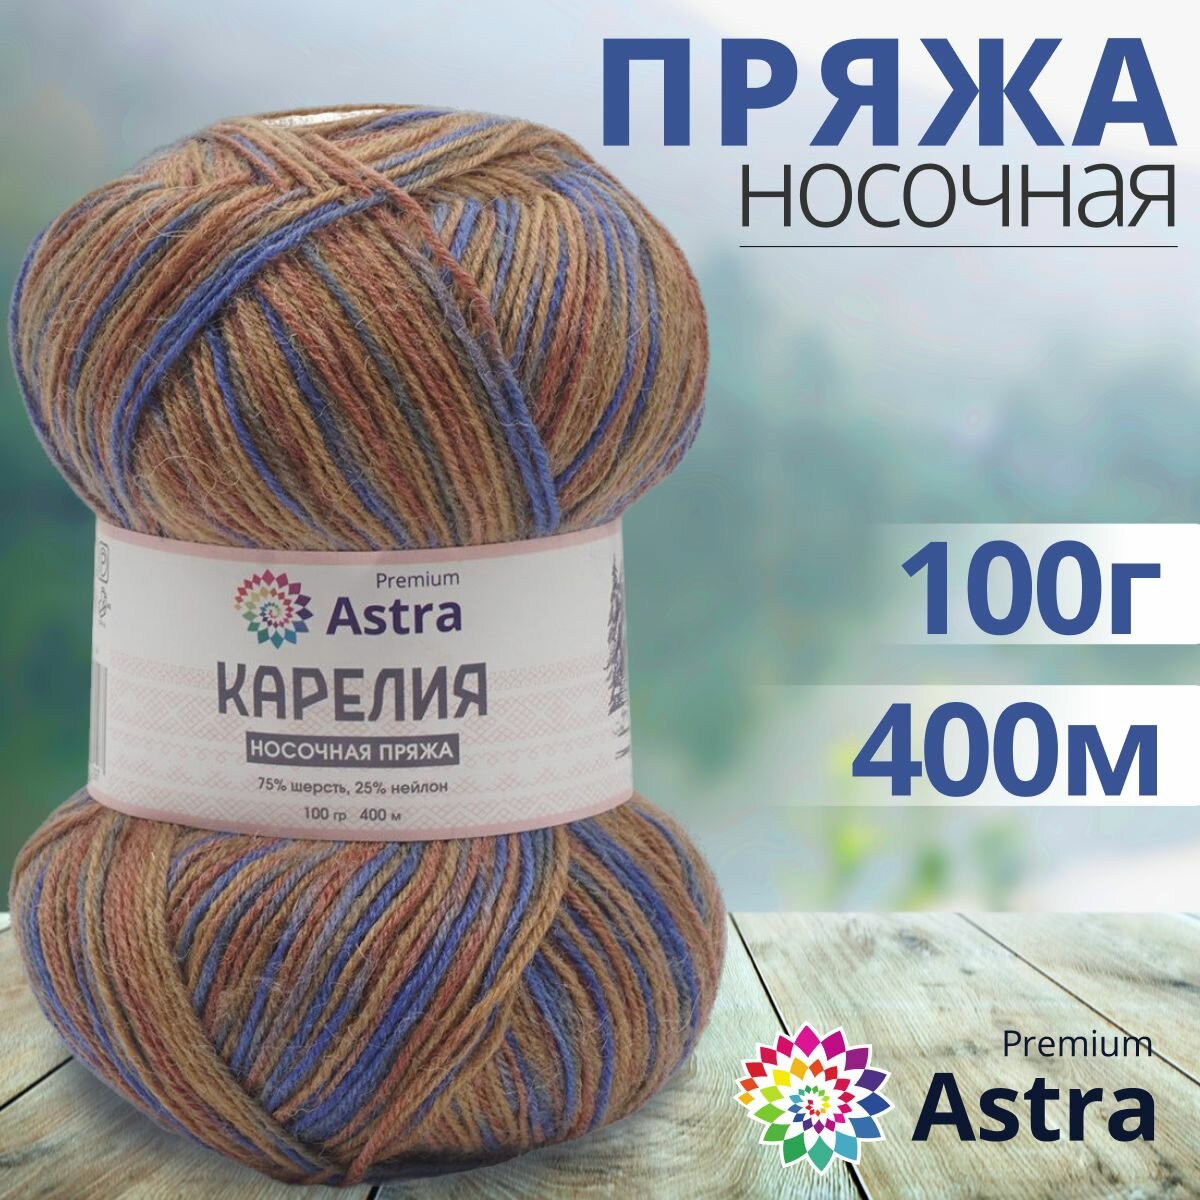 Пряжа для вязания Astra Premium 'Карелия' носочная (Karelia sock), 100г, 400м (75% шерсть, 25% нейлон) (1005), 2 мотка